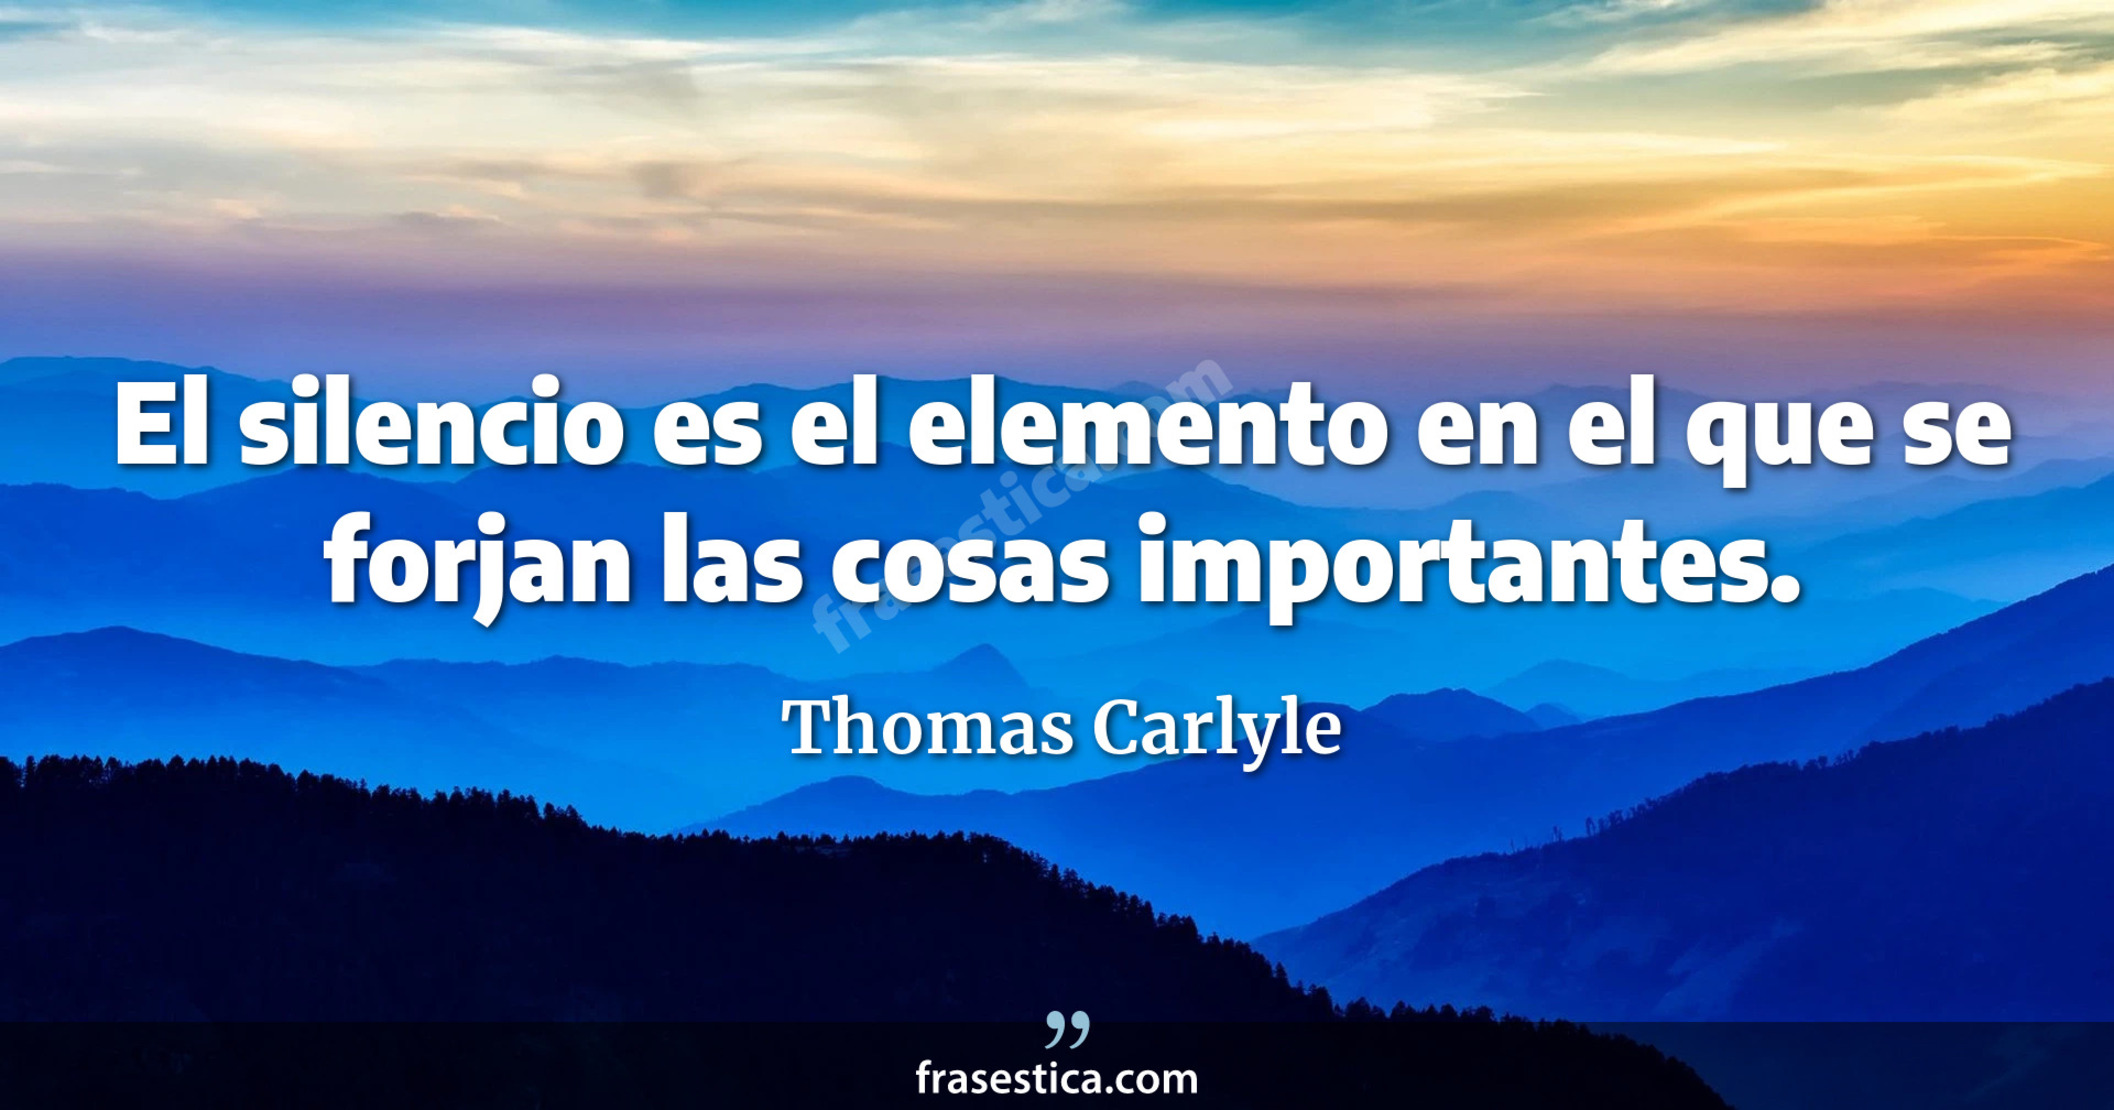 El silencio es el elemento en el que se forjan las cosas importantes. - Thomas Carlyle